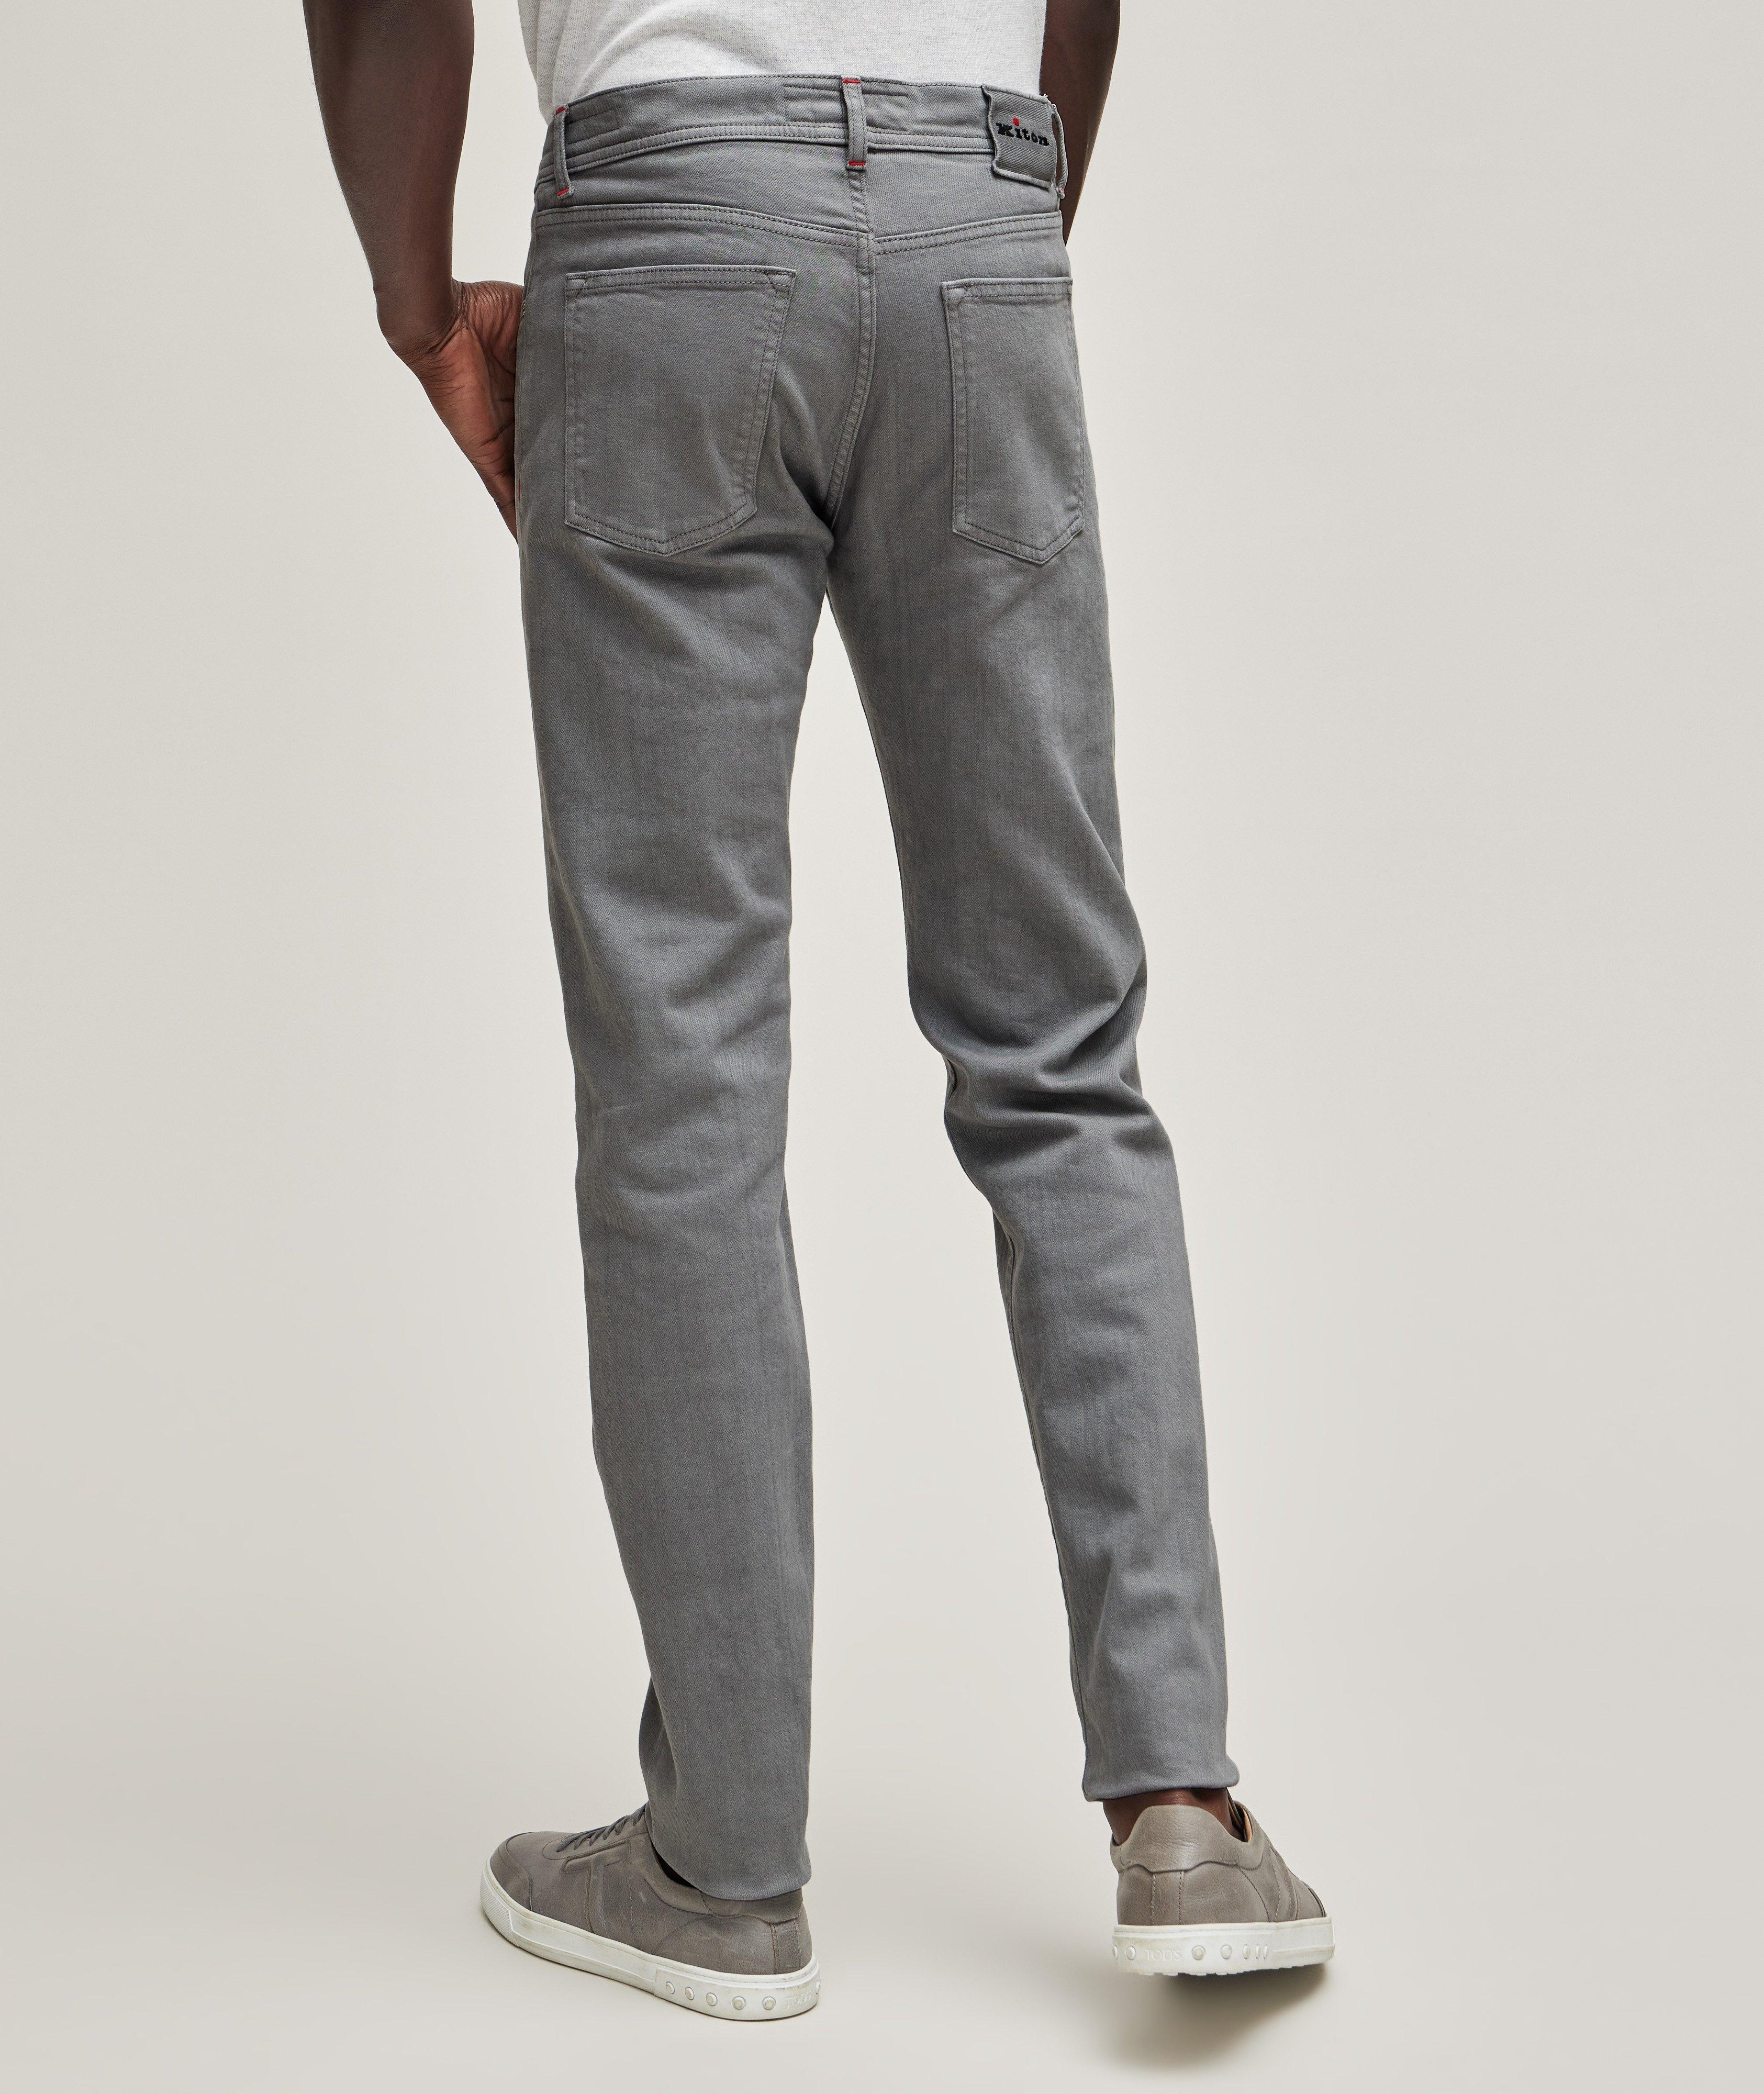 Kurabo Spun Five-Pocket Cotton-Stretch Pants image 3